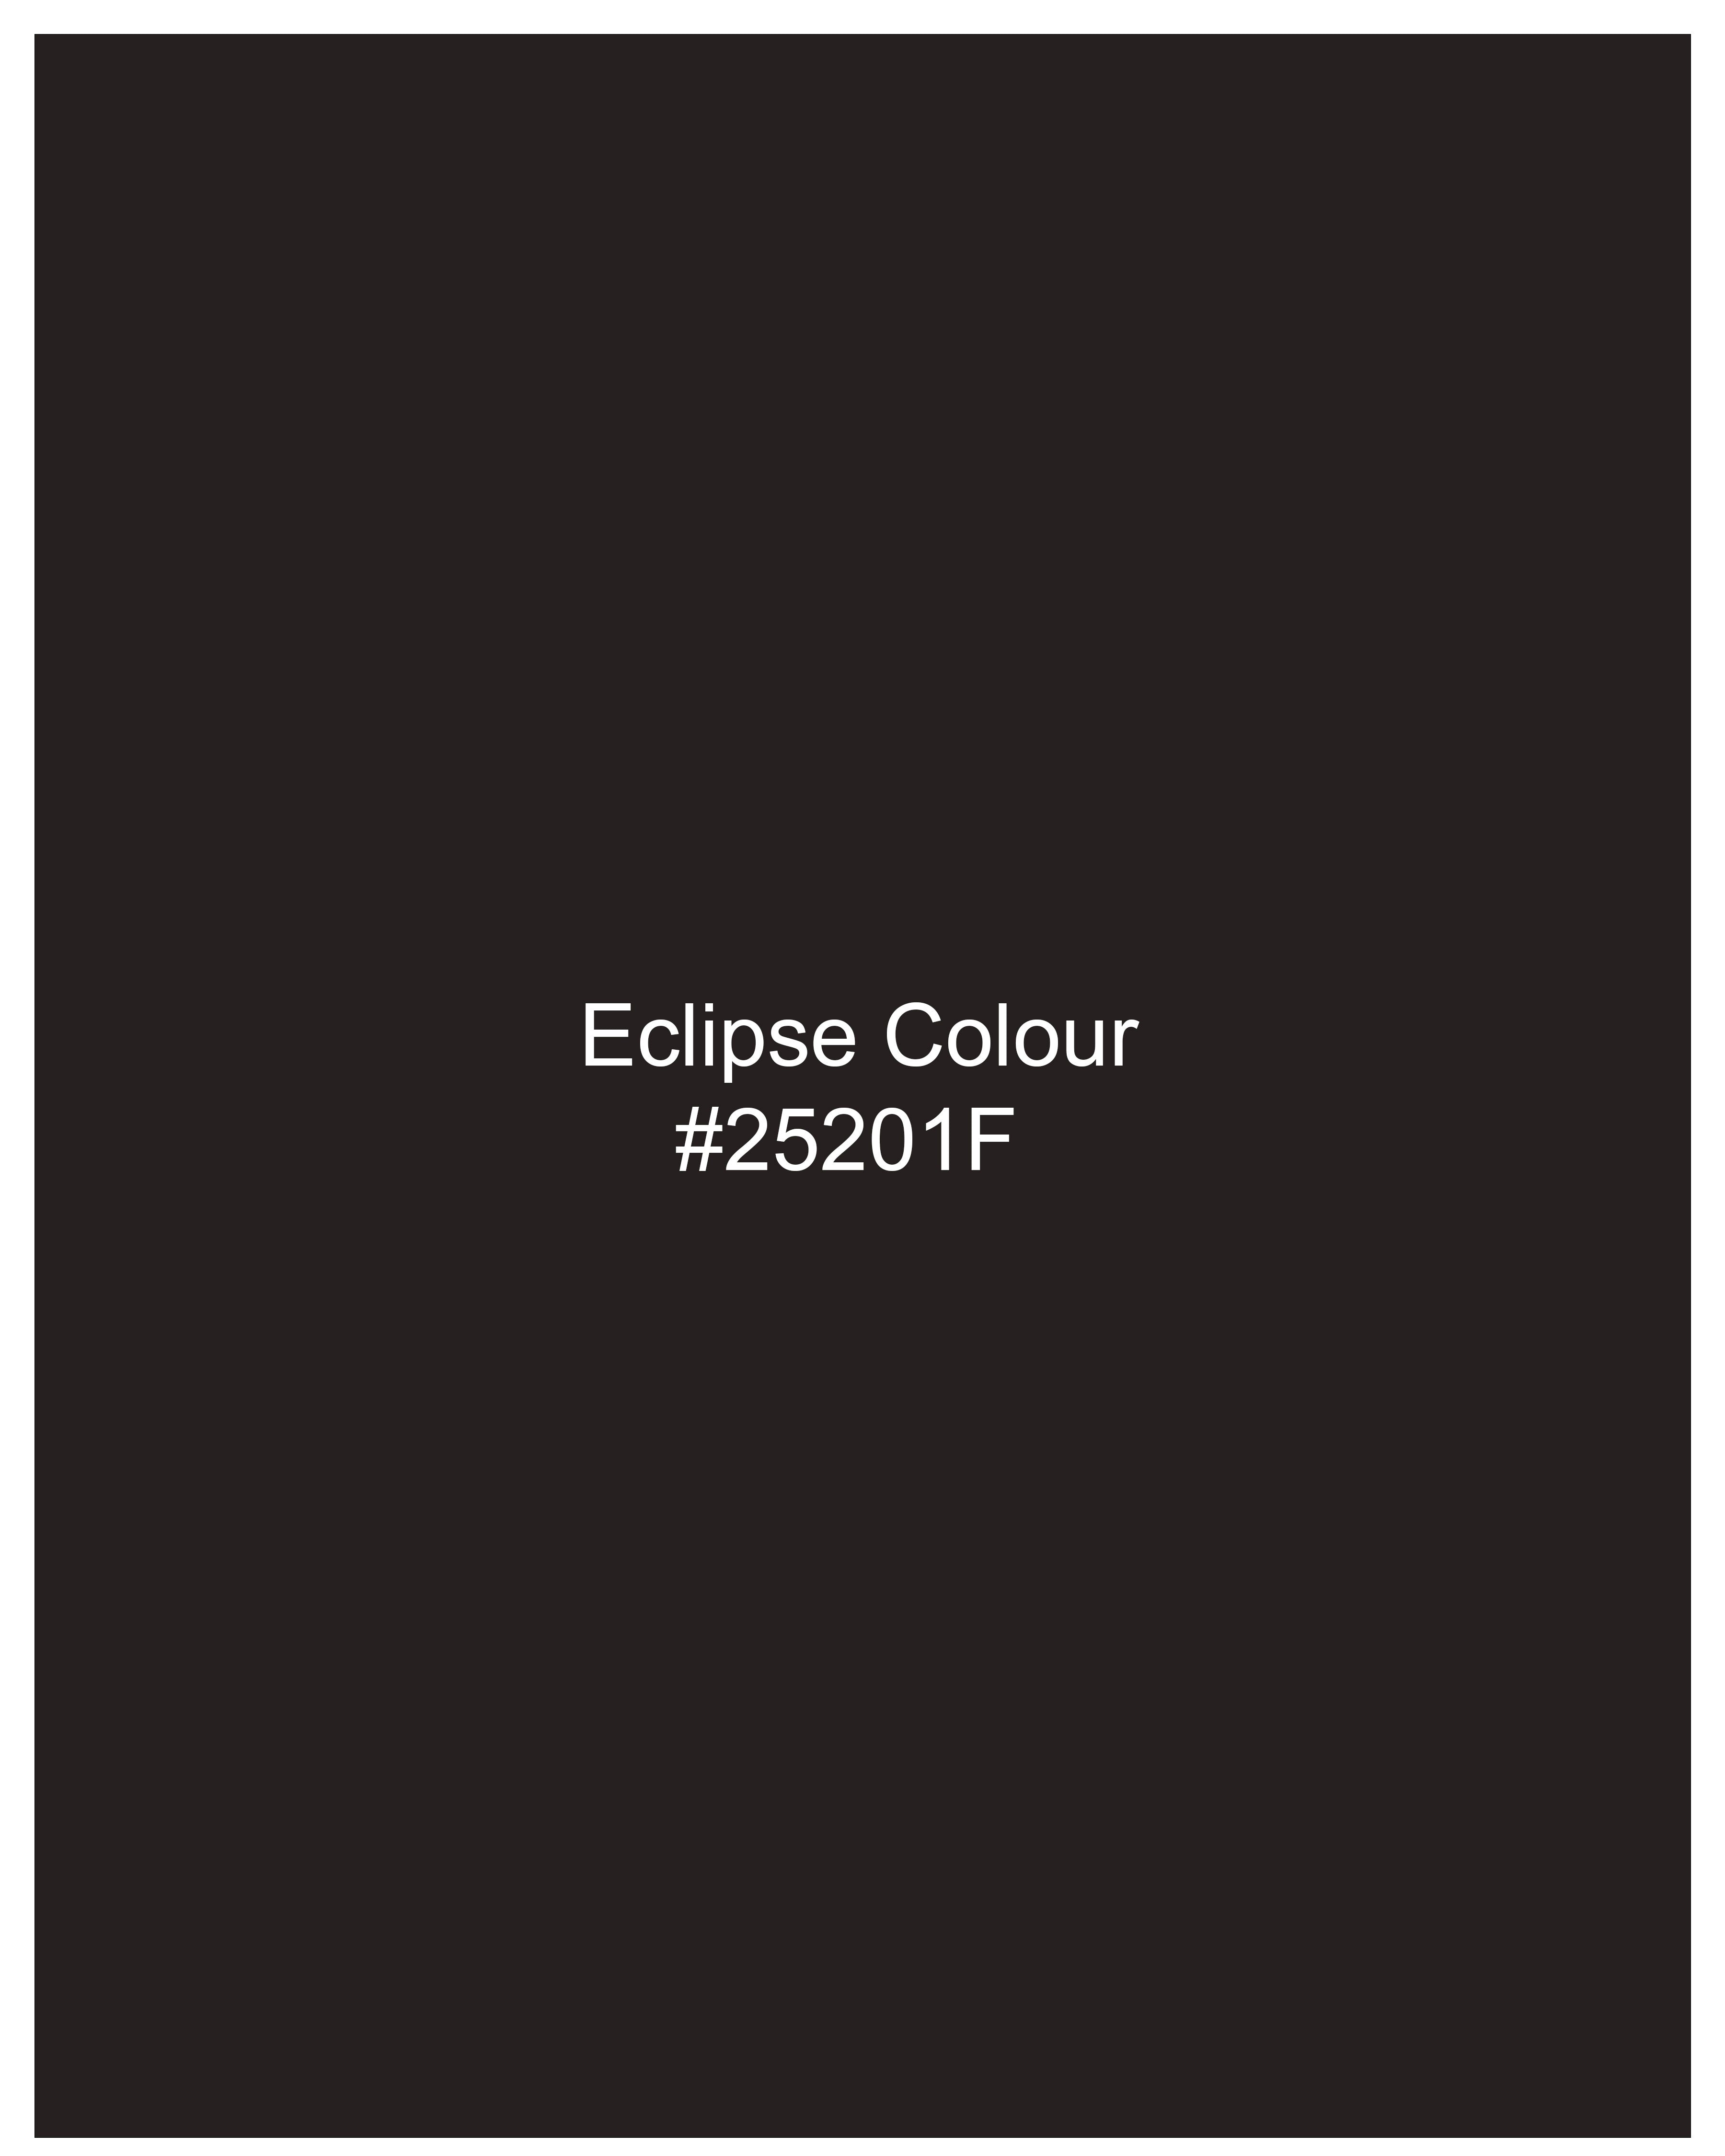 Eclipse Brown Textured Pants T2500-28, T2500-30, T2500-32, T2500-34, T2500-36, T2500-38, T2500-40, T2500-42, T2500-44